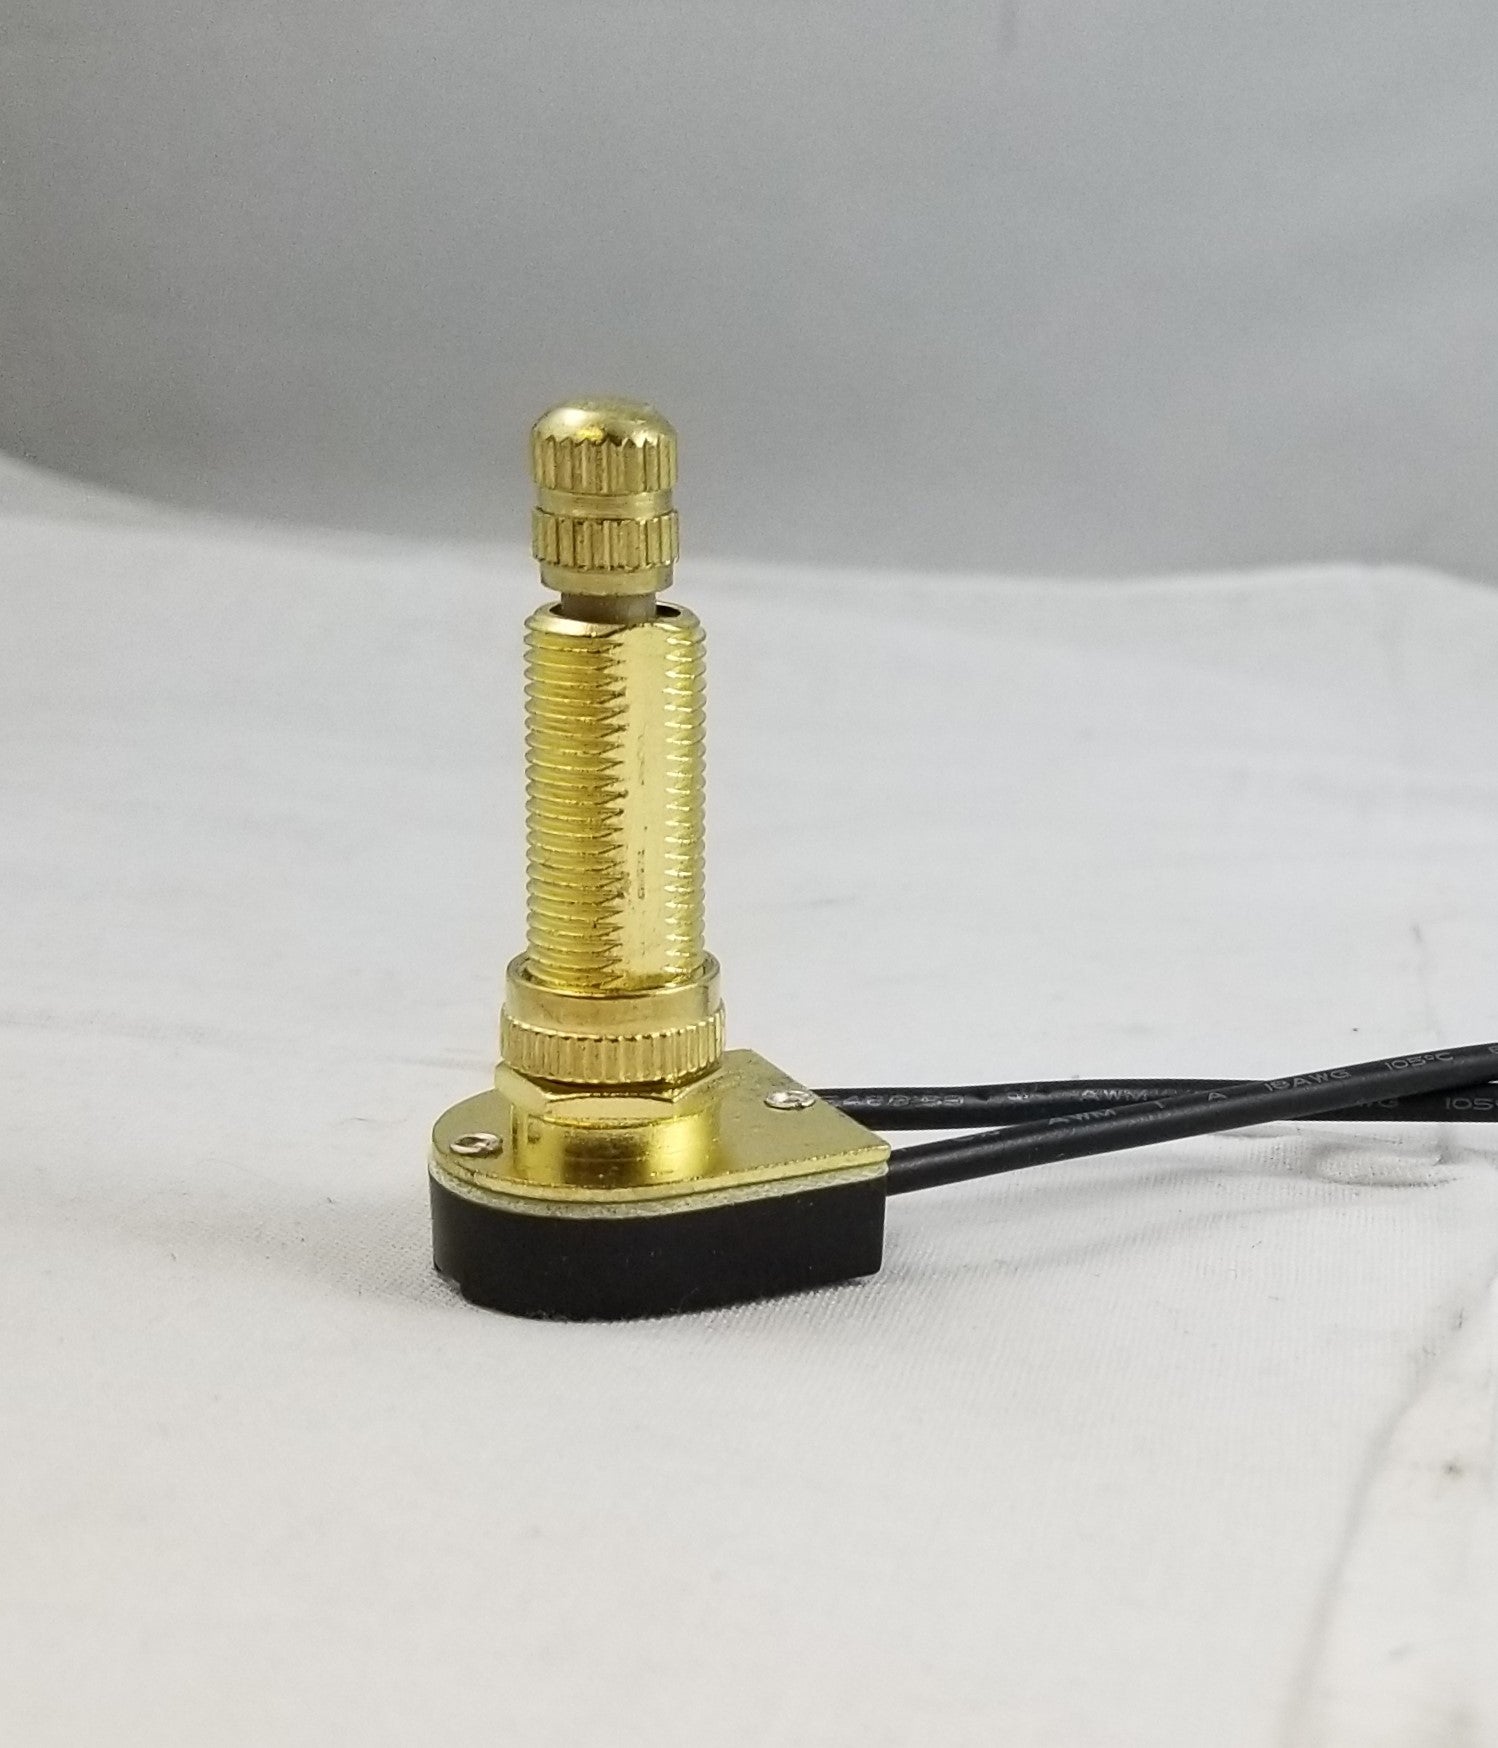 Brass Turn Knob Switch - 1-1/8" shank